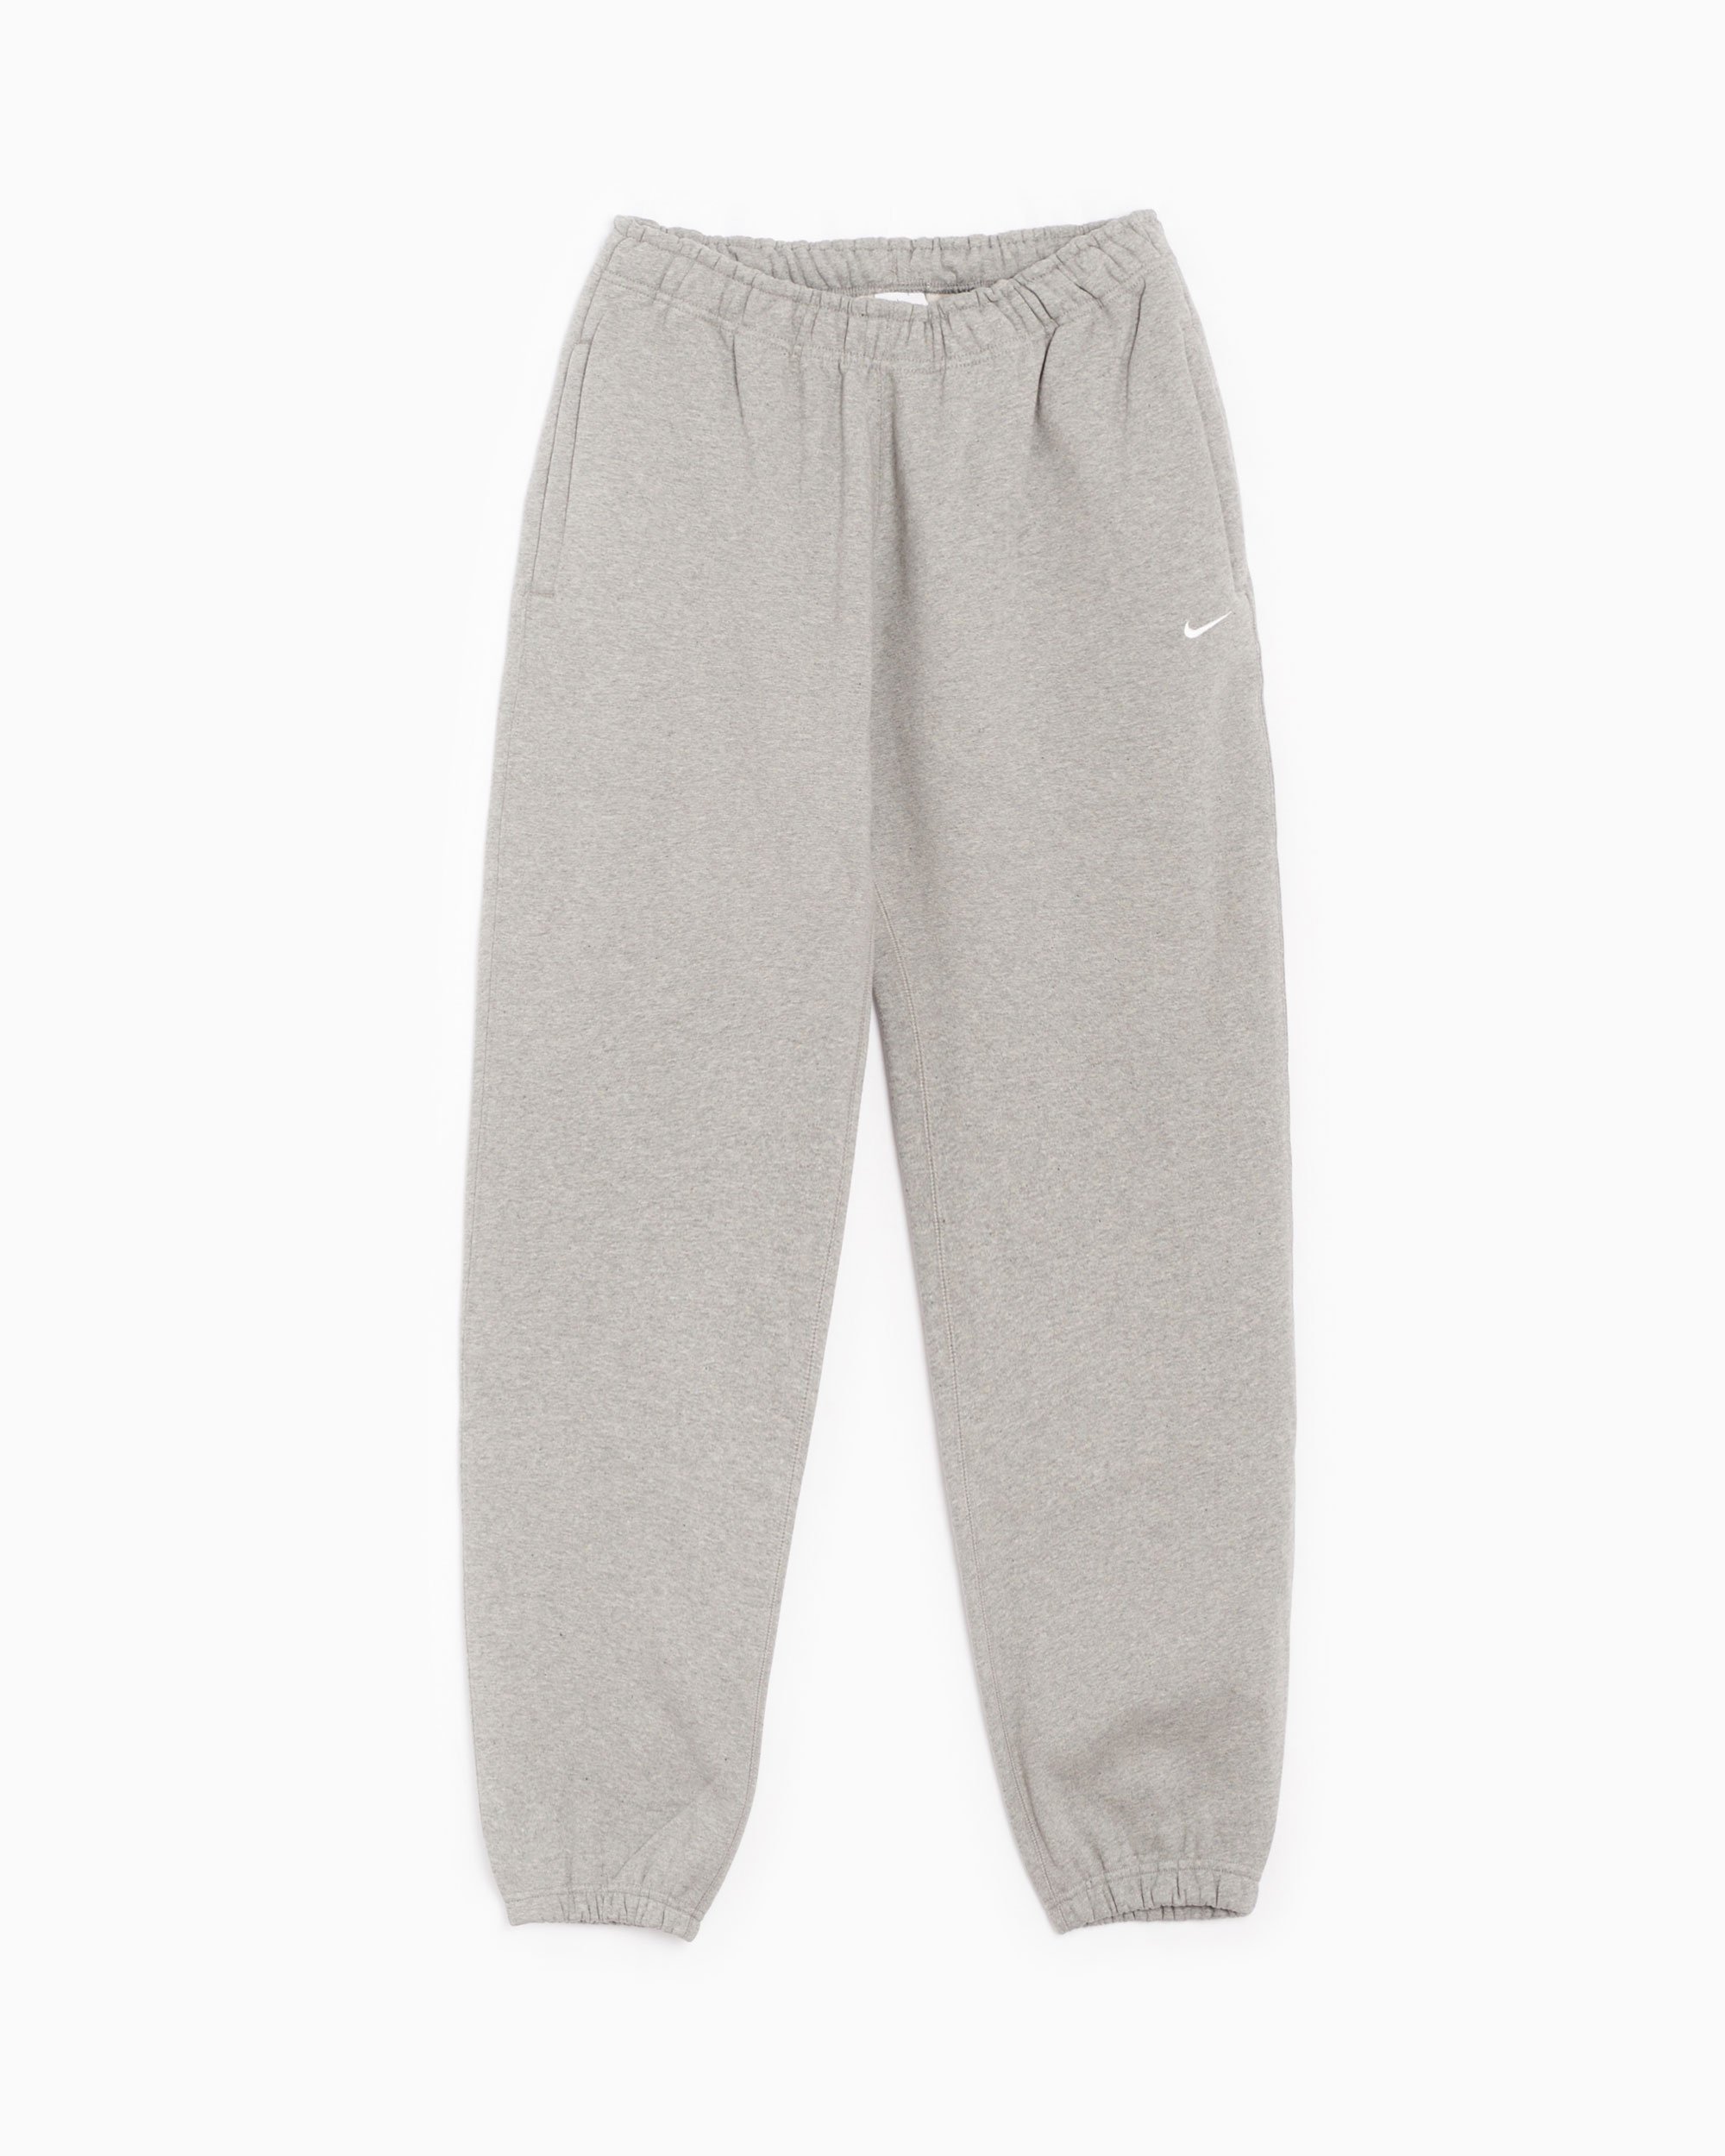 Nike NRG Solo Swoosh Women's Fleece Pants Cinza CW5565-063